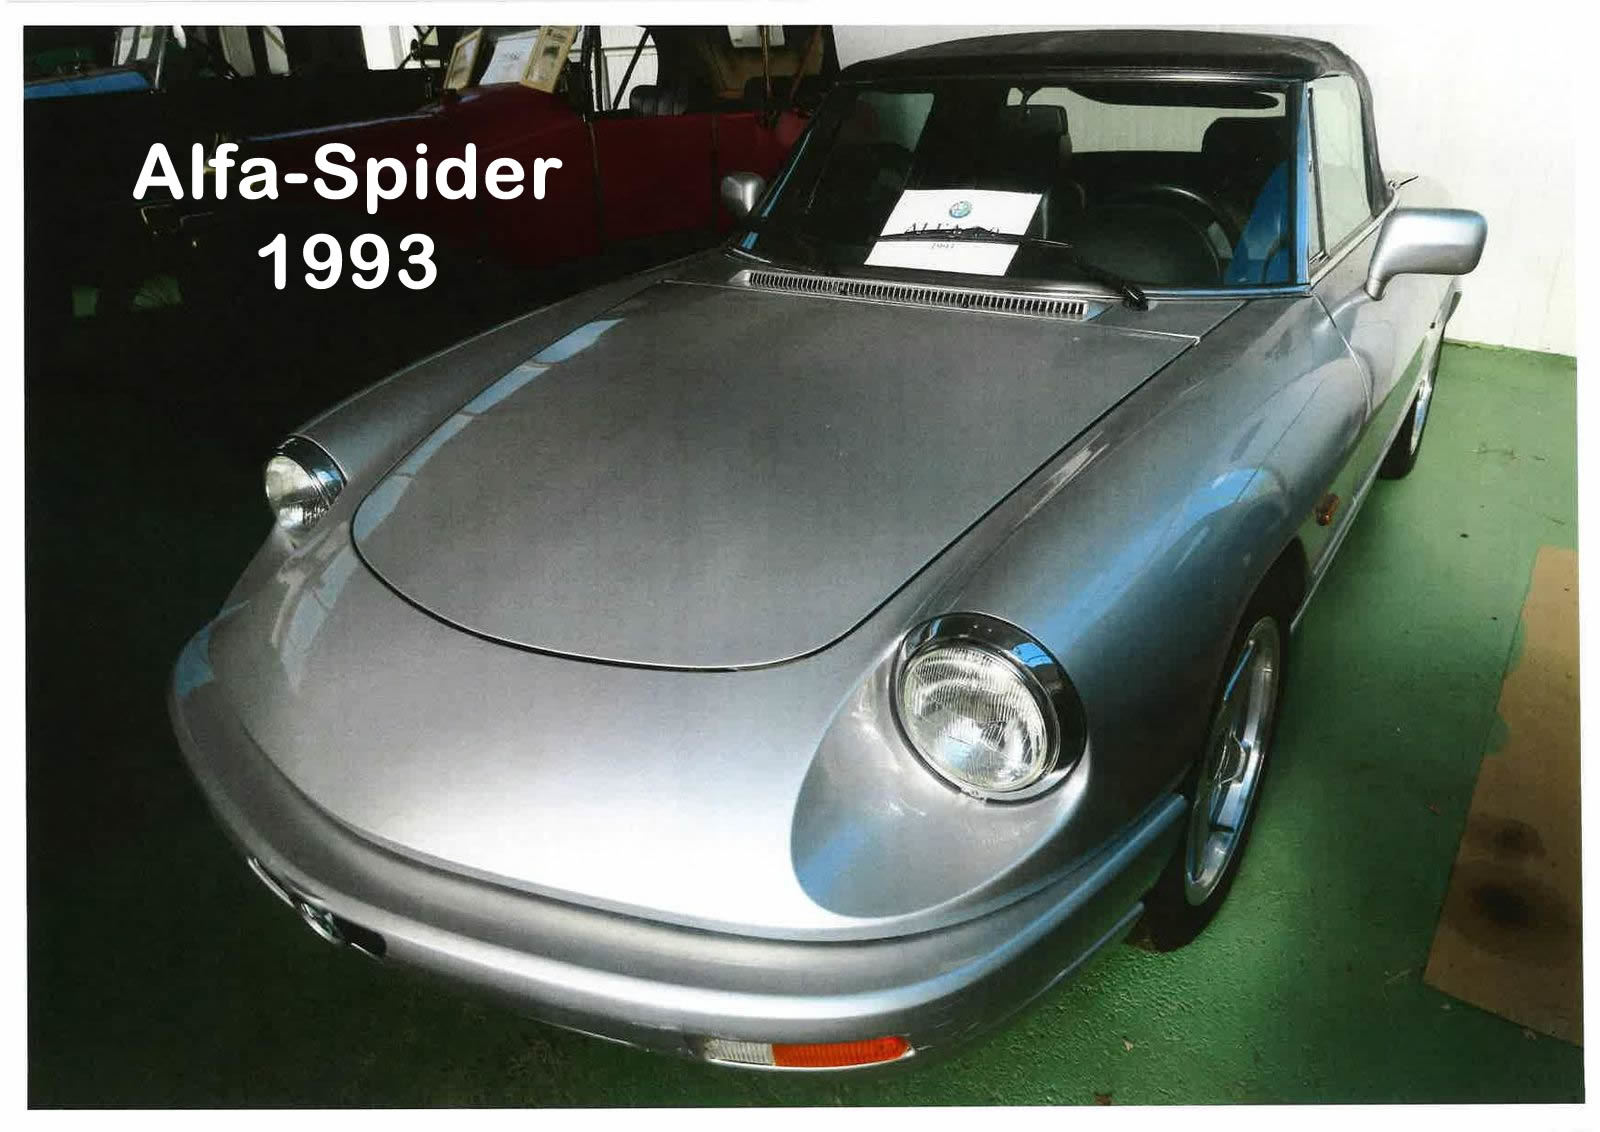 03 Alfa Spider 1993